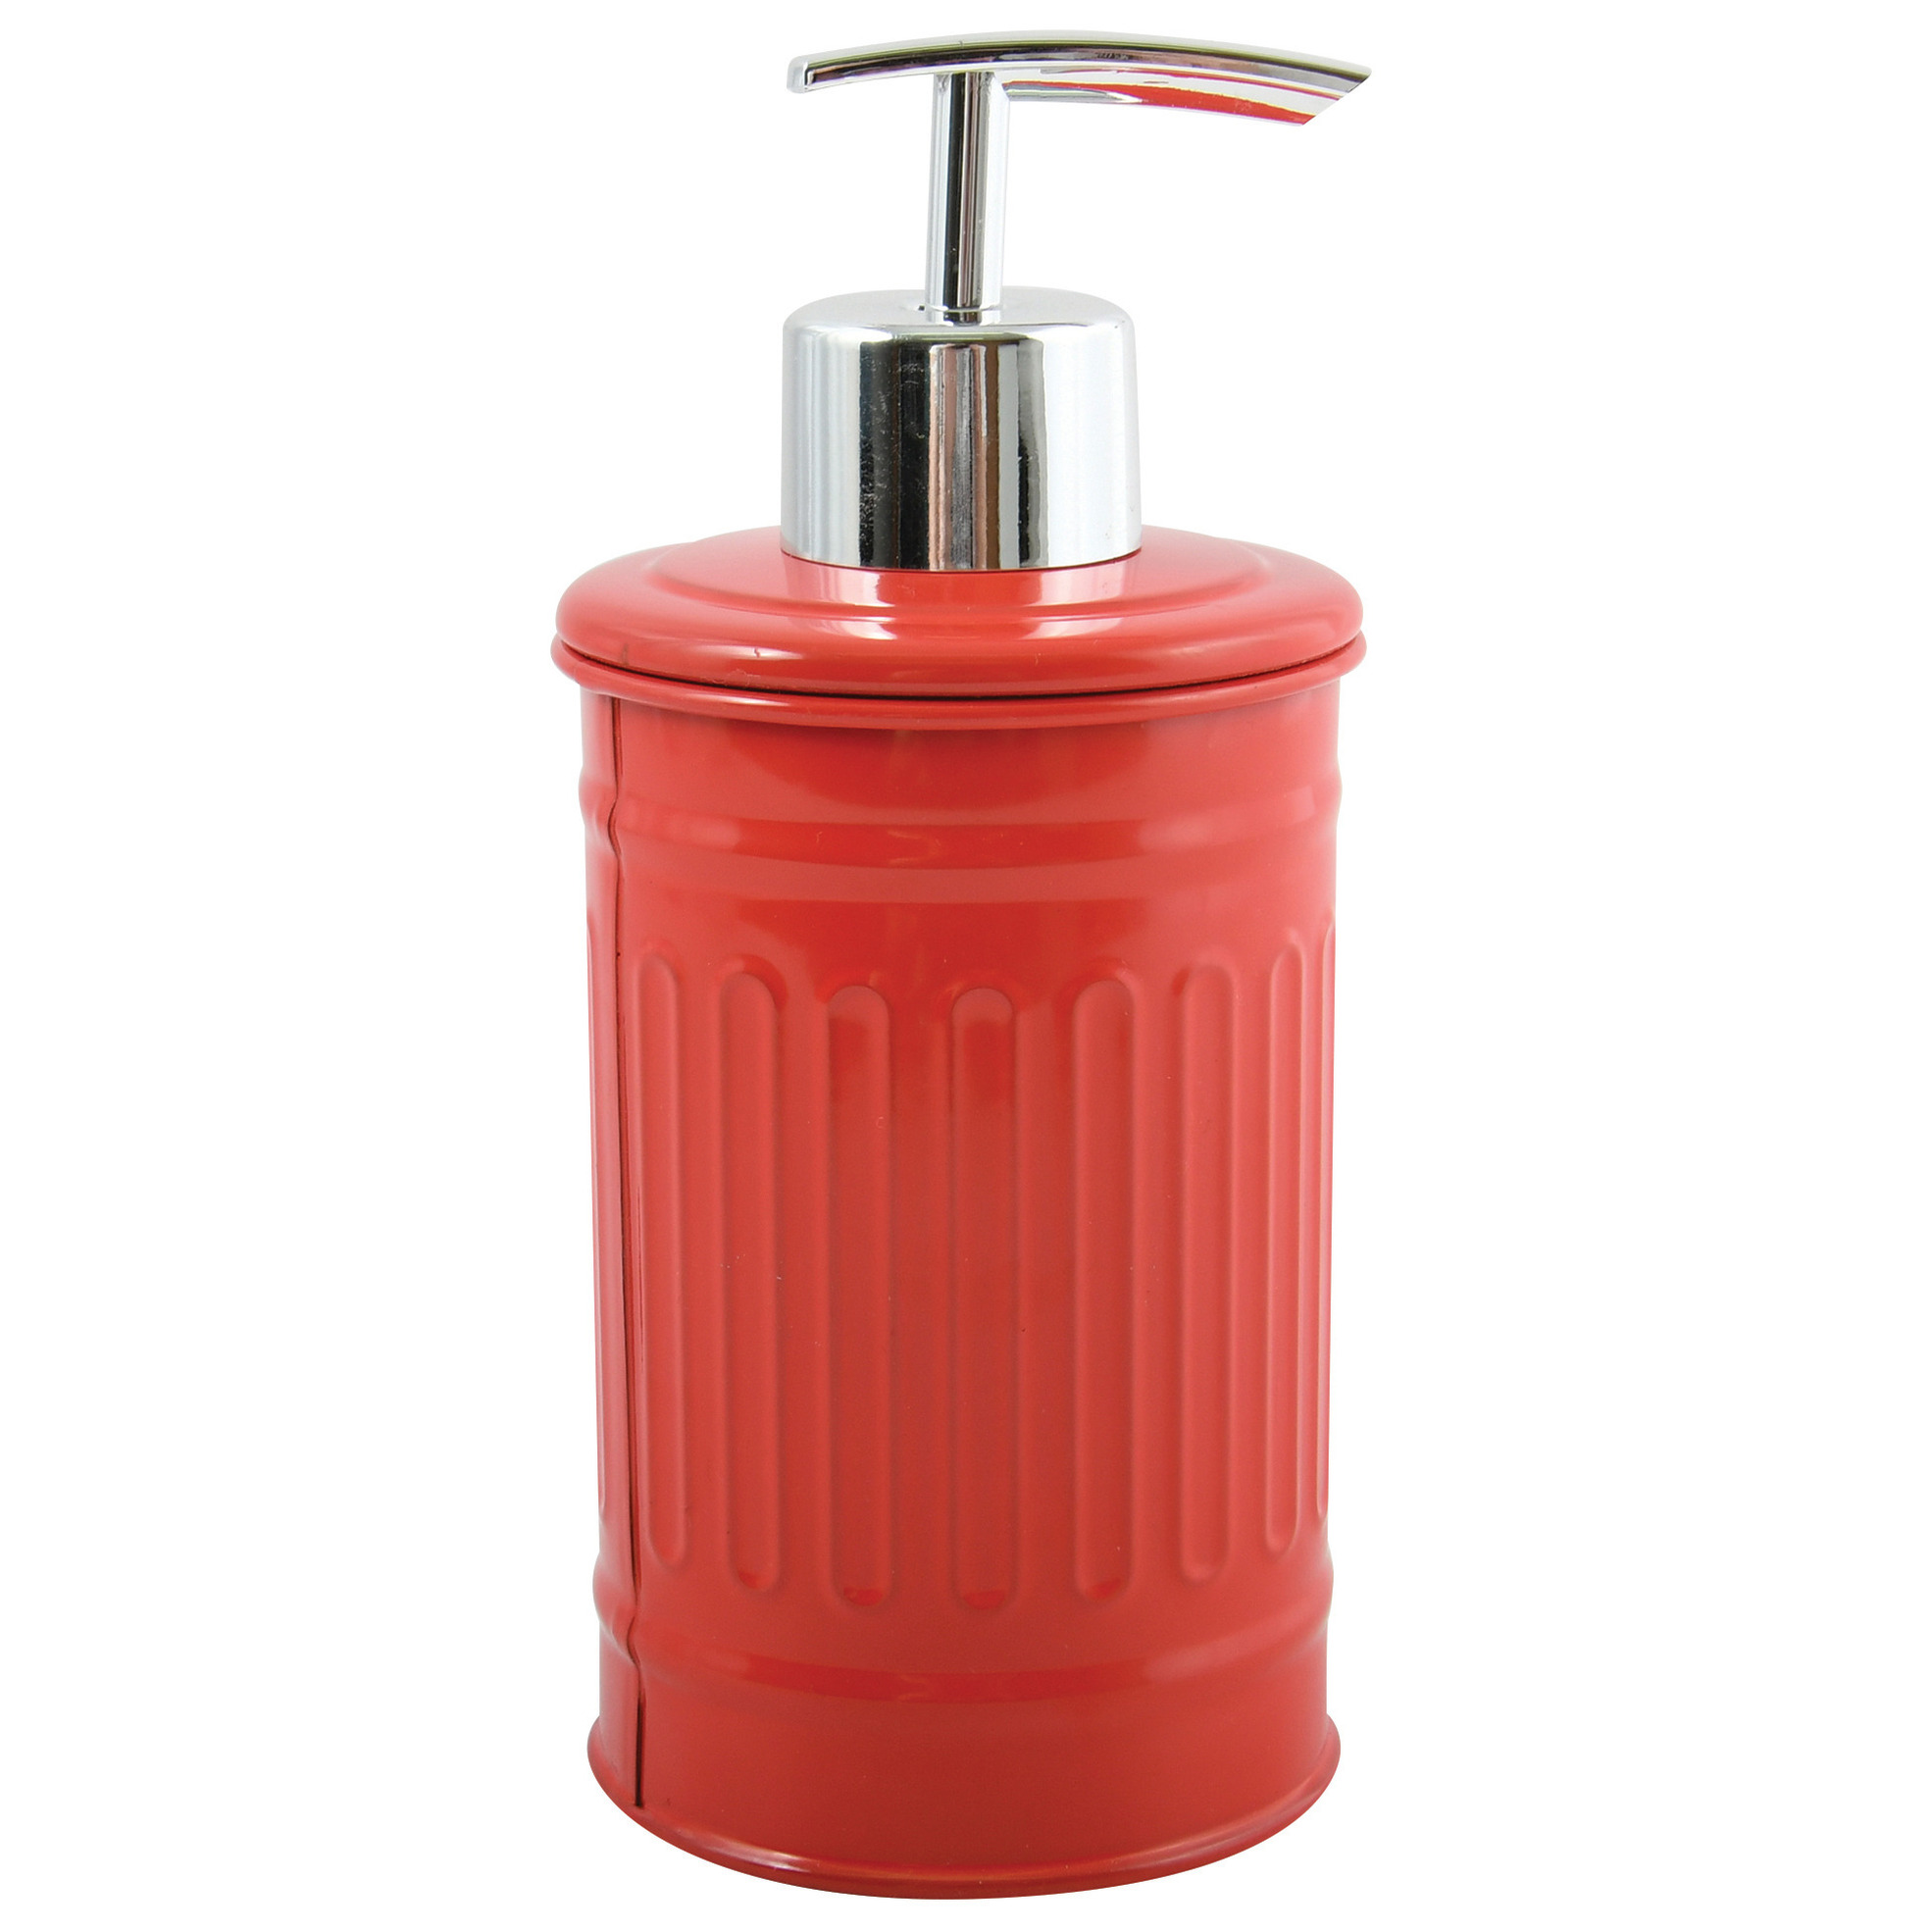 Zeeppompje-zeepdispenser Industrial metaal rood-zilver 7.5 x 17 cm 250 ml